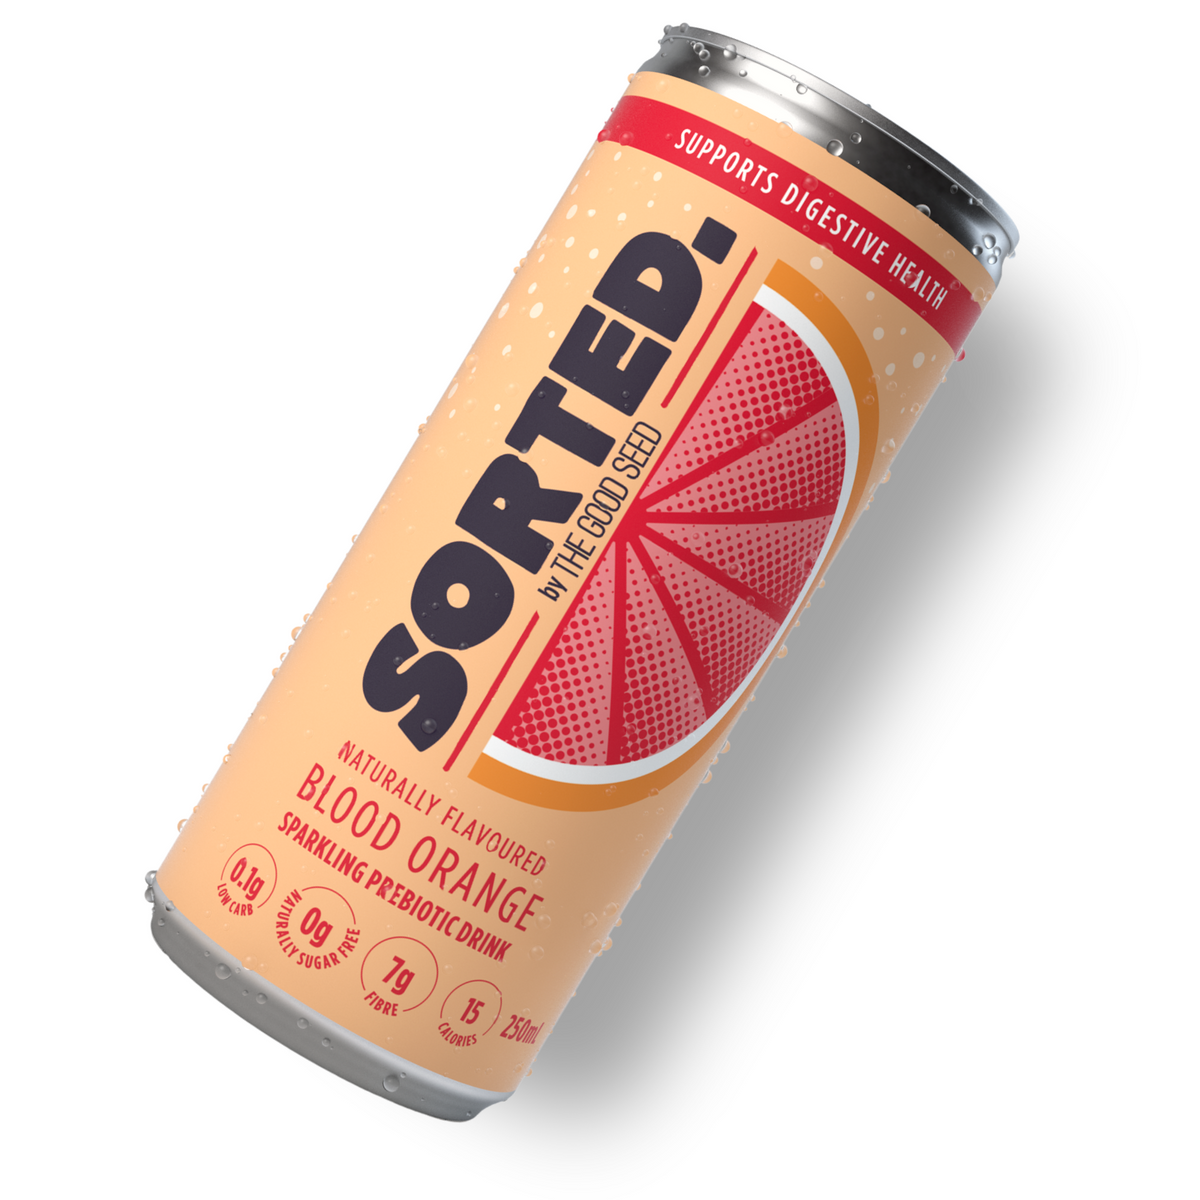 Sorted - Sparkling Prebiotic Drink